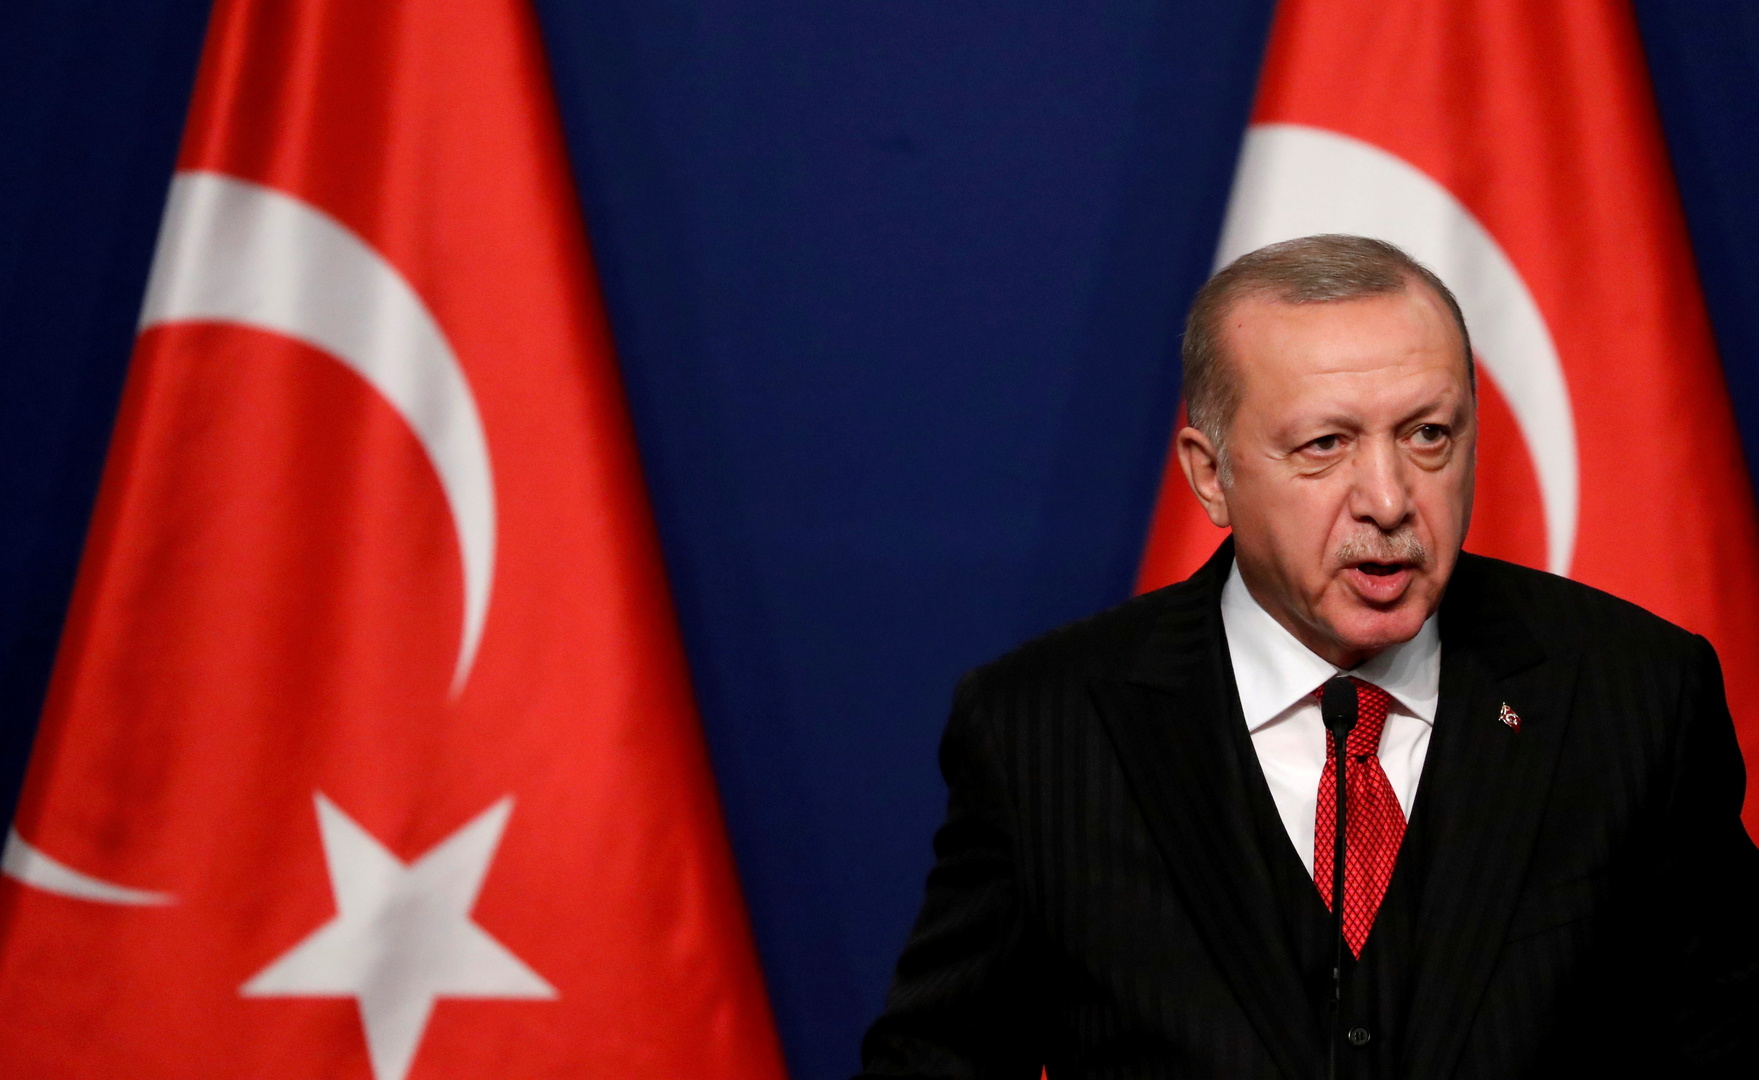 أردوغان: يجب الارتقاء بالتعاون مع العراق في مكافحة الإرهاب